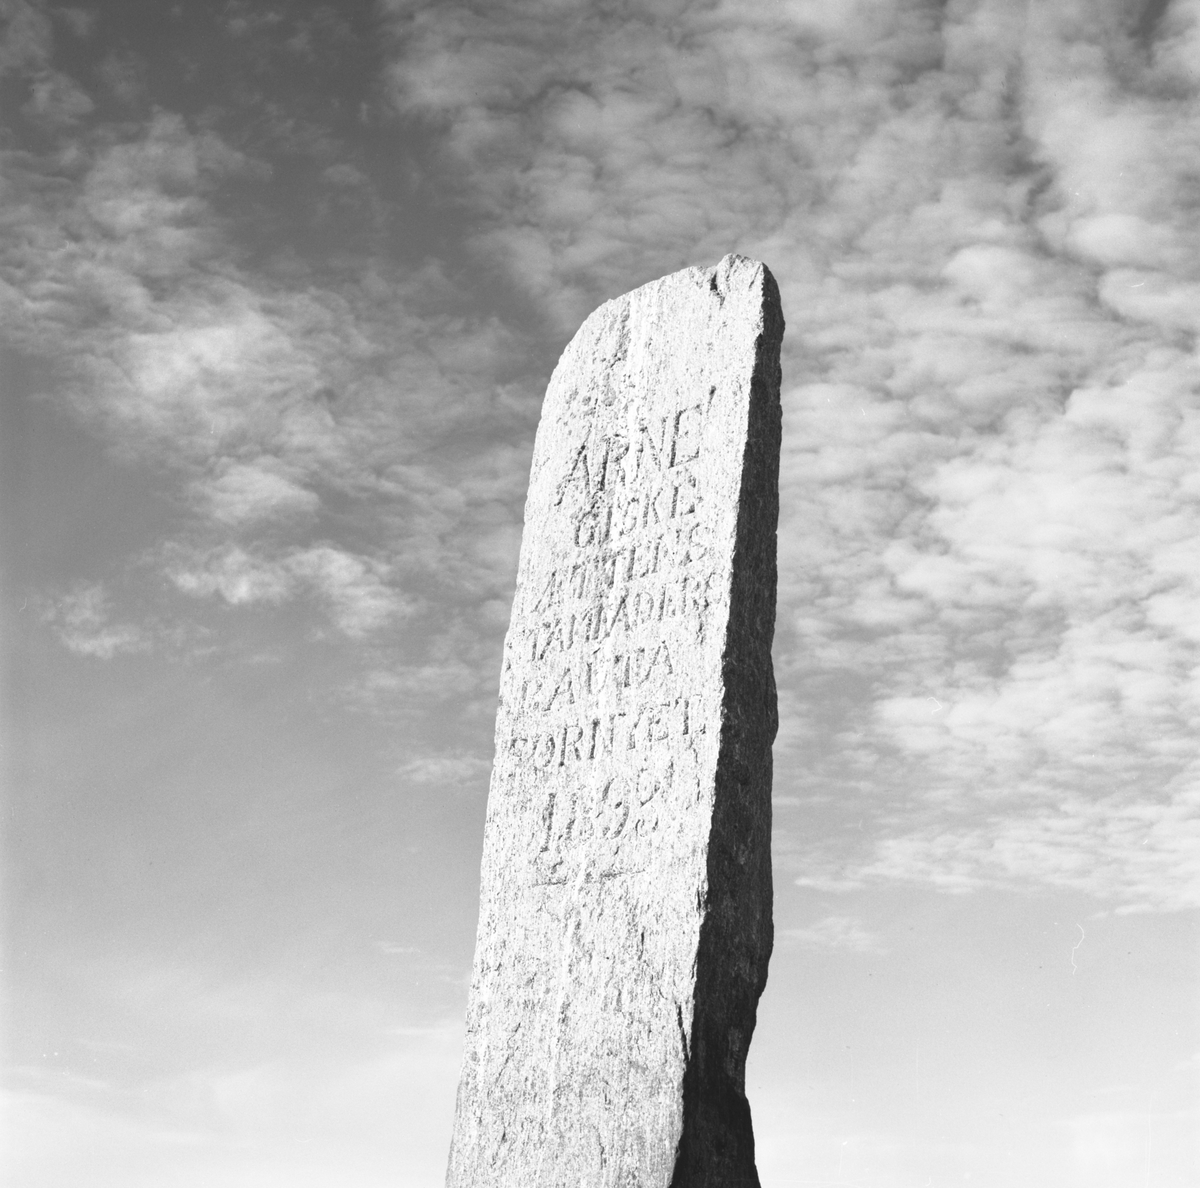 Bautasteinen "Vikaren" på høyden bak kirka på Giske. Innskriften sier: "Arne Giske ættens stamfaders bauta fornyet 1893".